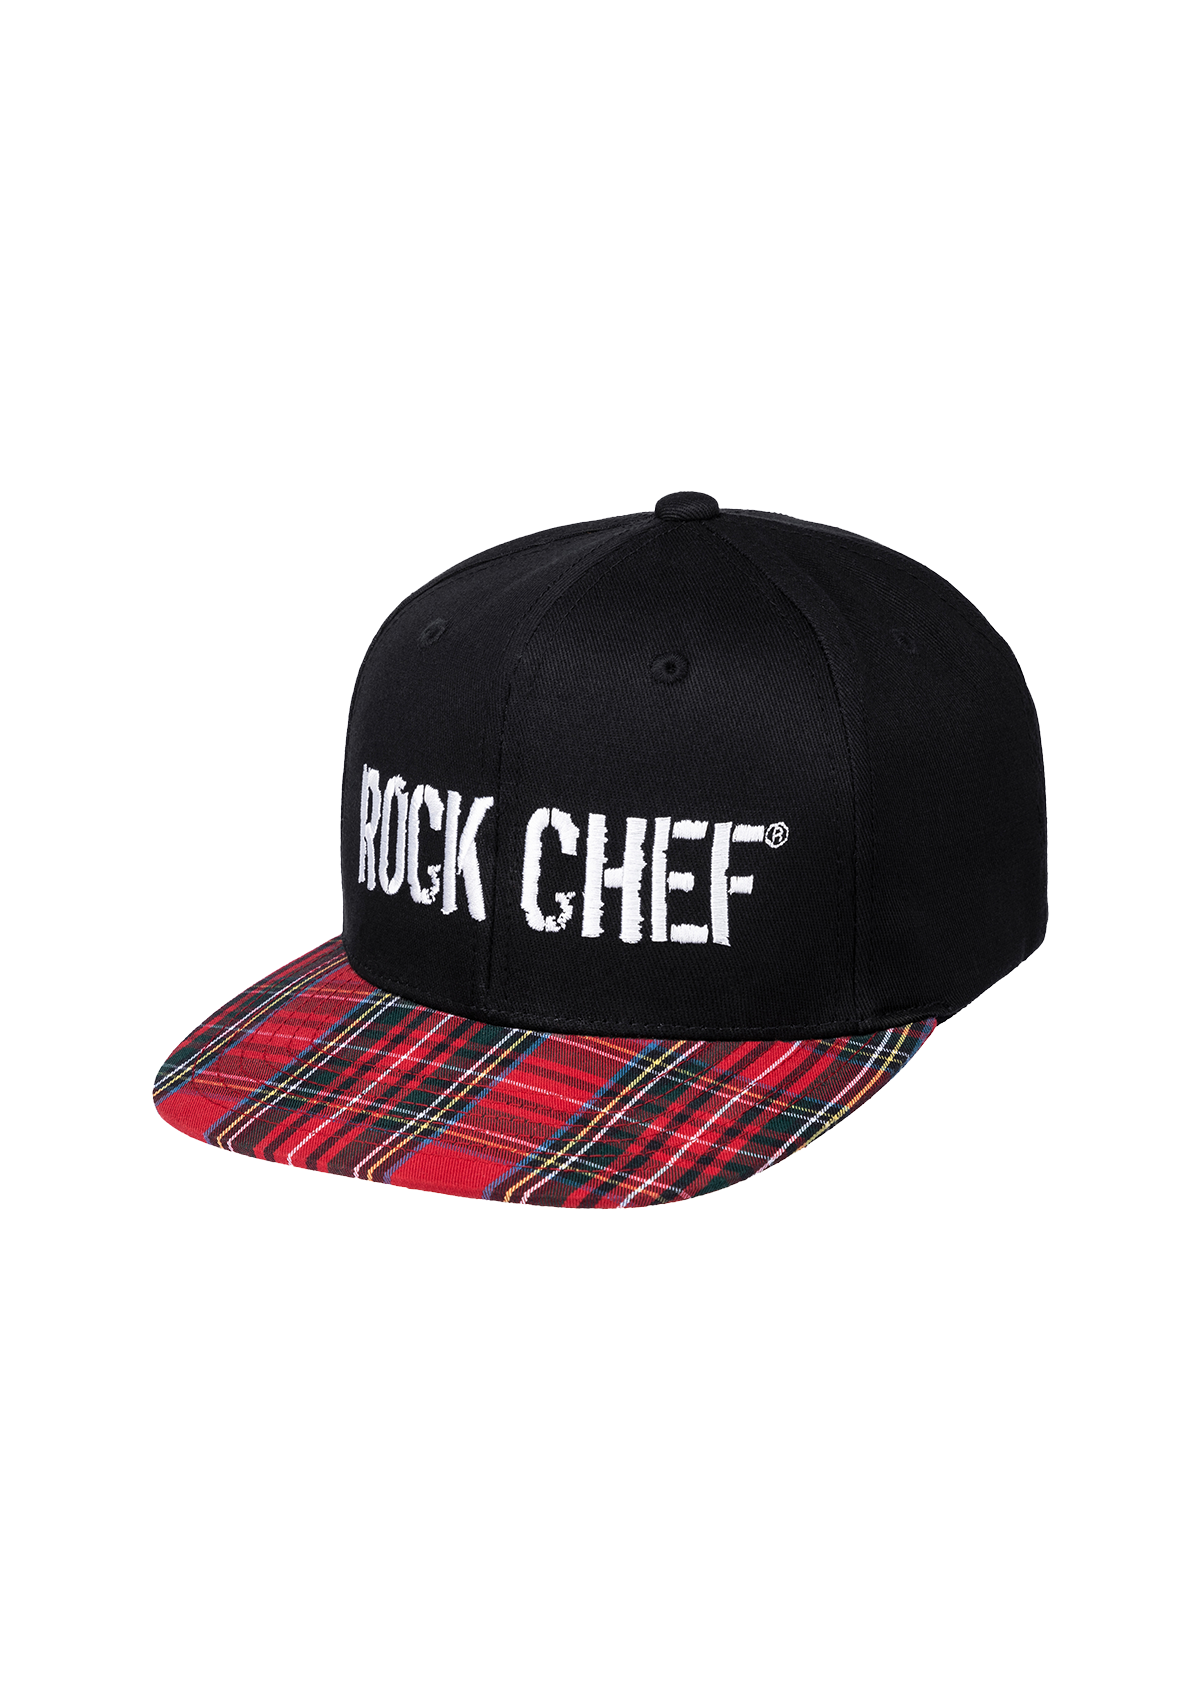 Flat Cap ROCK CHEF®